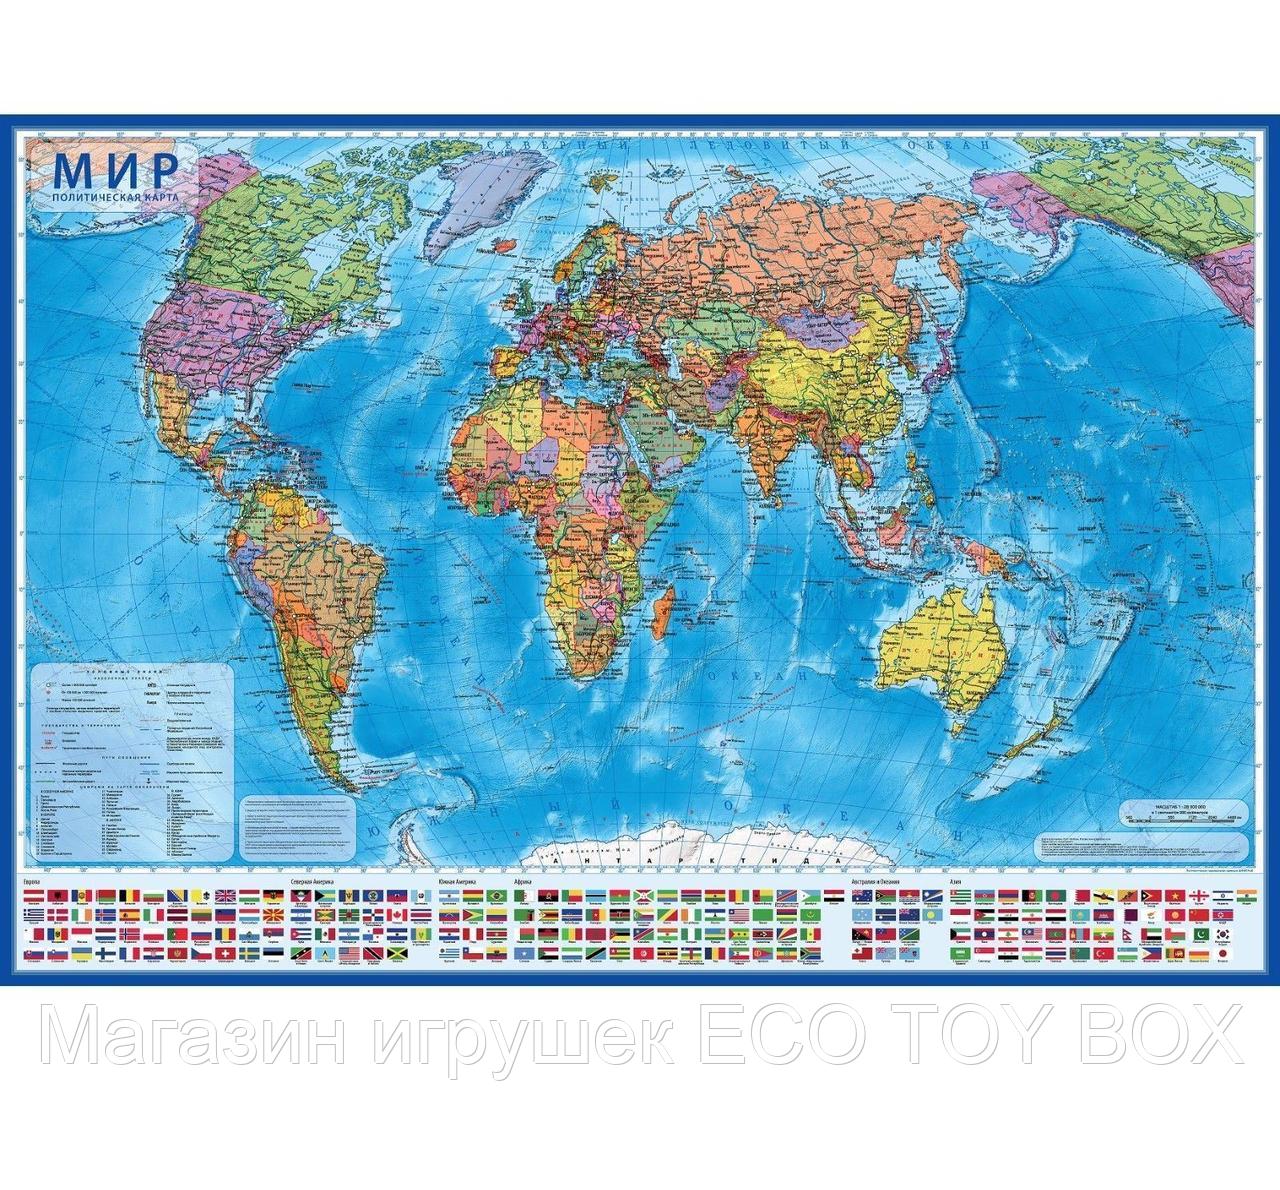 Географическая карта мира политическая, 101 х 66 см, 1:32 М, фото 1